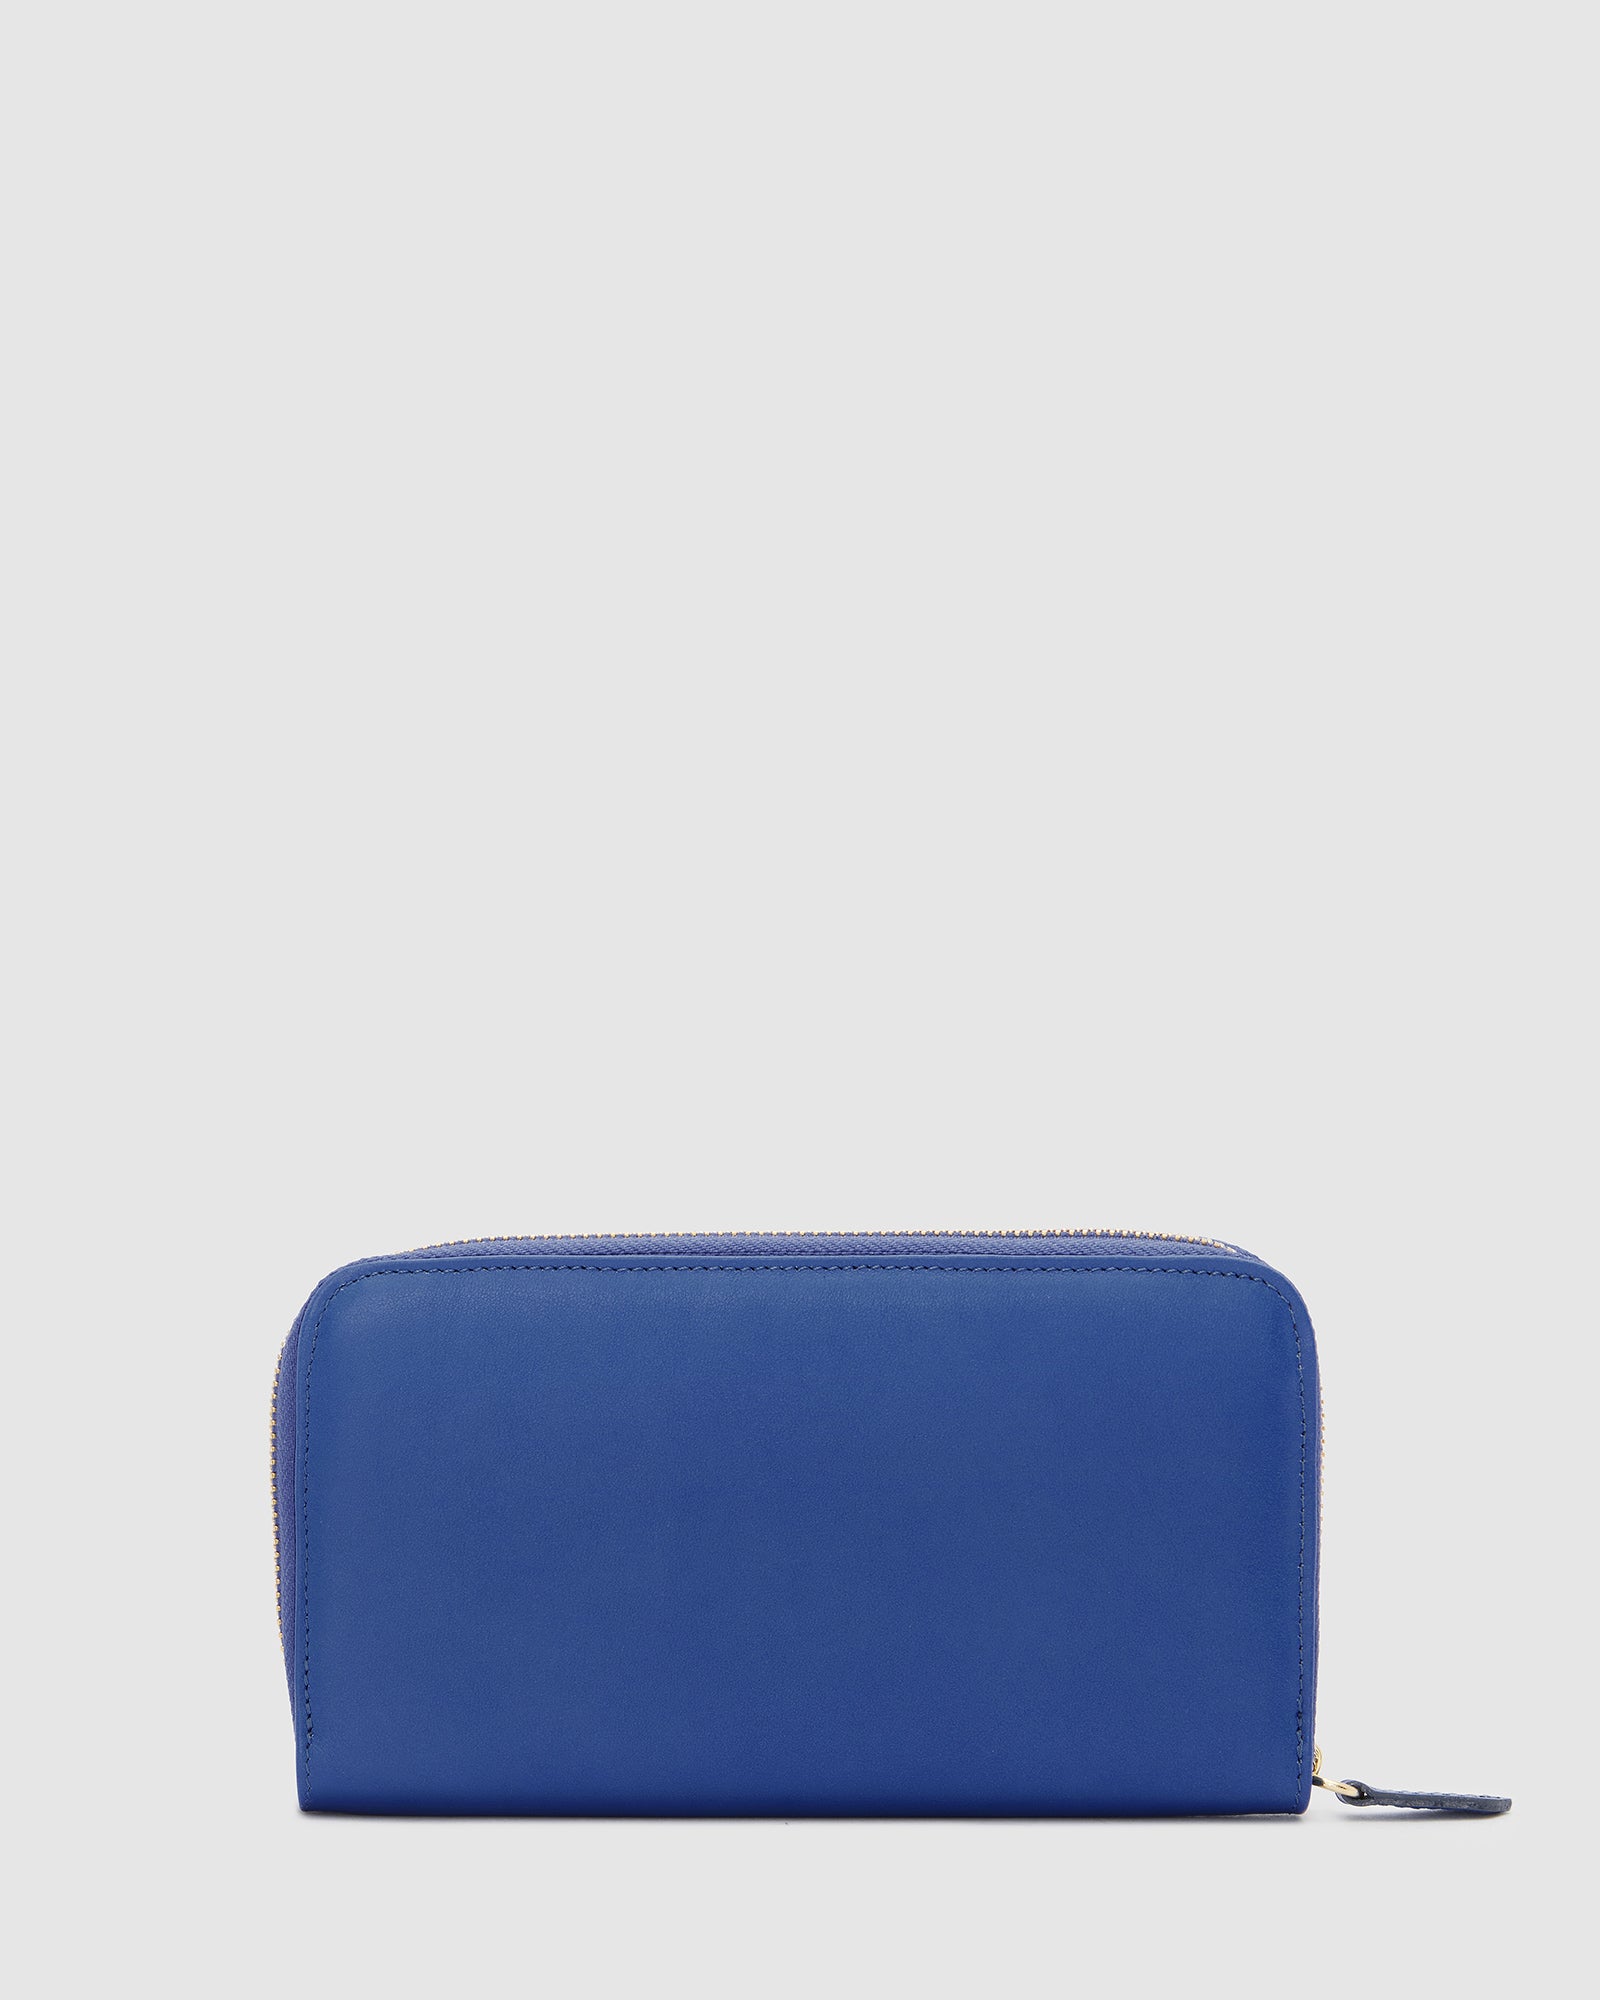 Mimi Blue - Women Leather Wallet